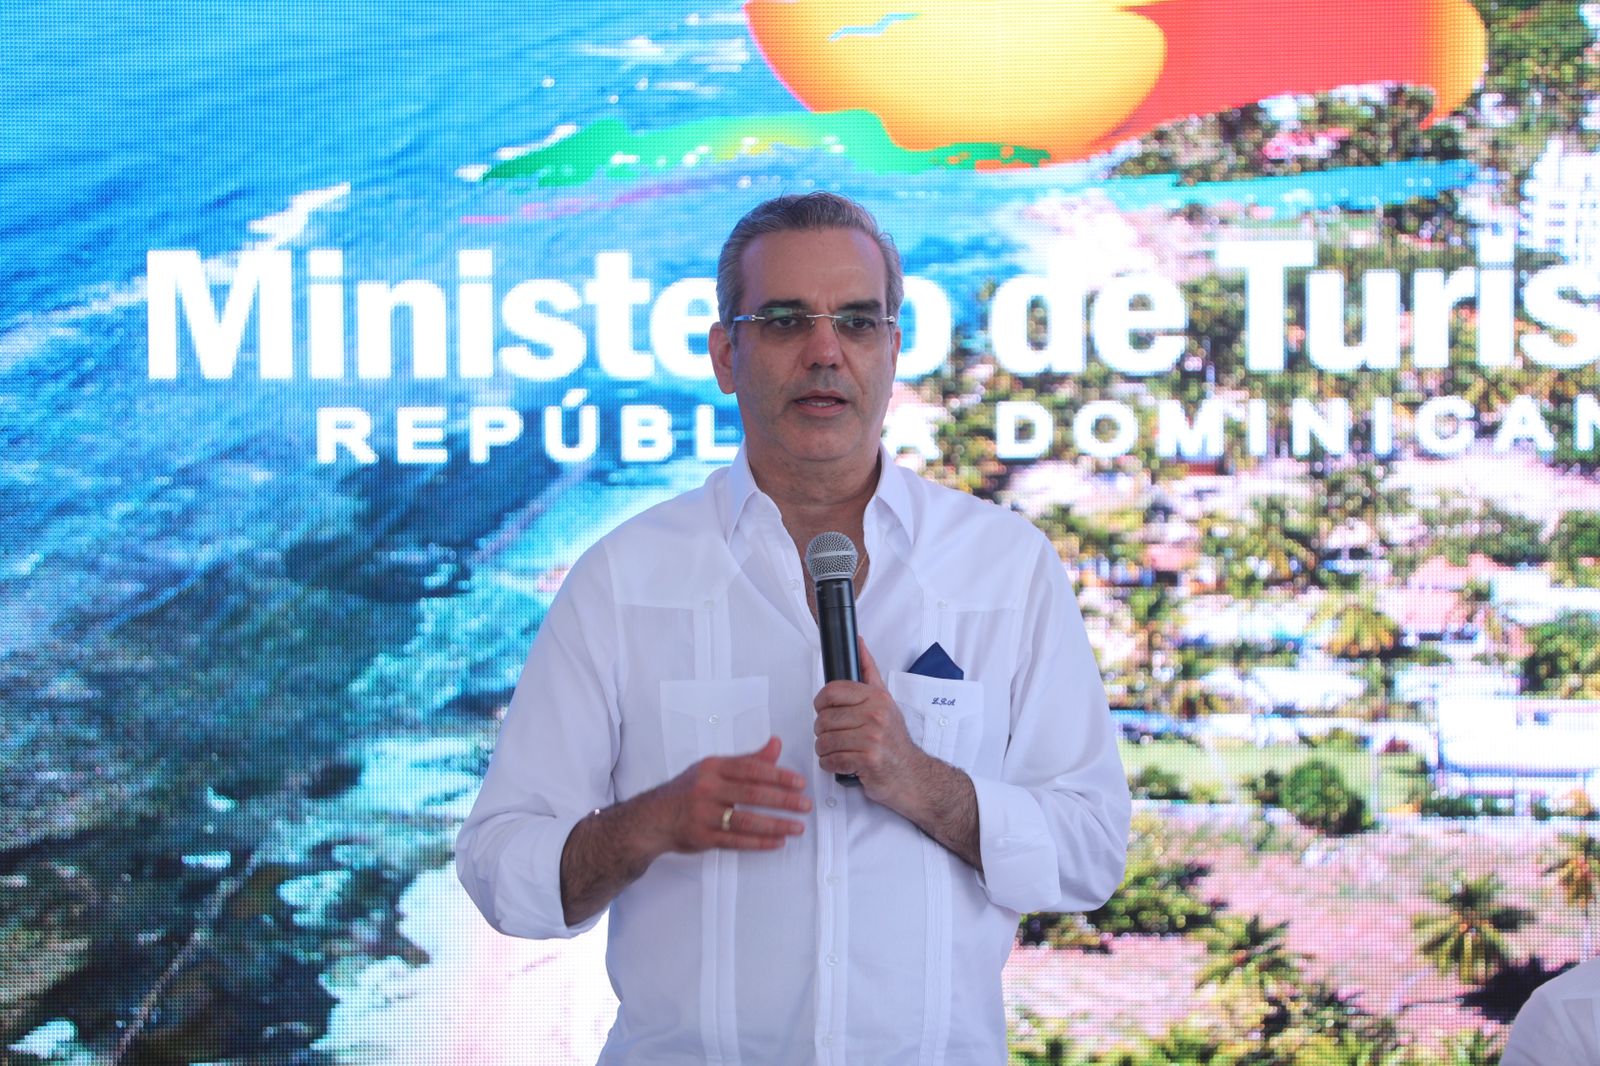 Presidente Abinader hablará al país el 16 de agosto desde Cabo Rojo, Pedernales.